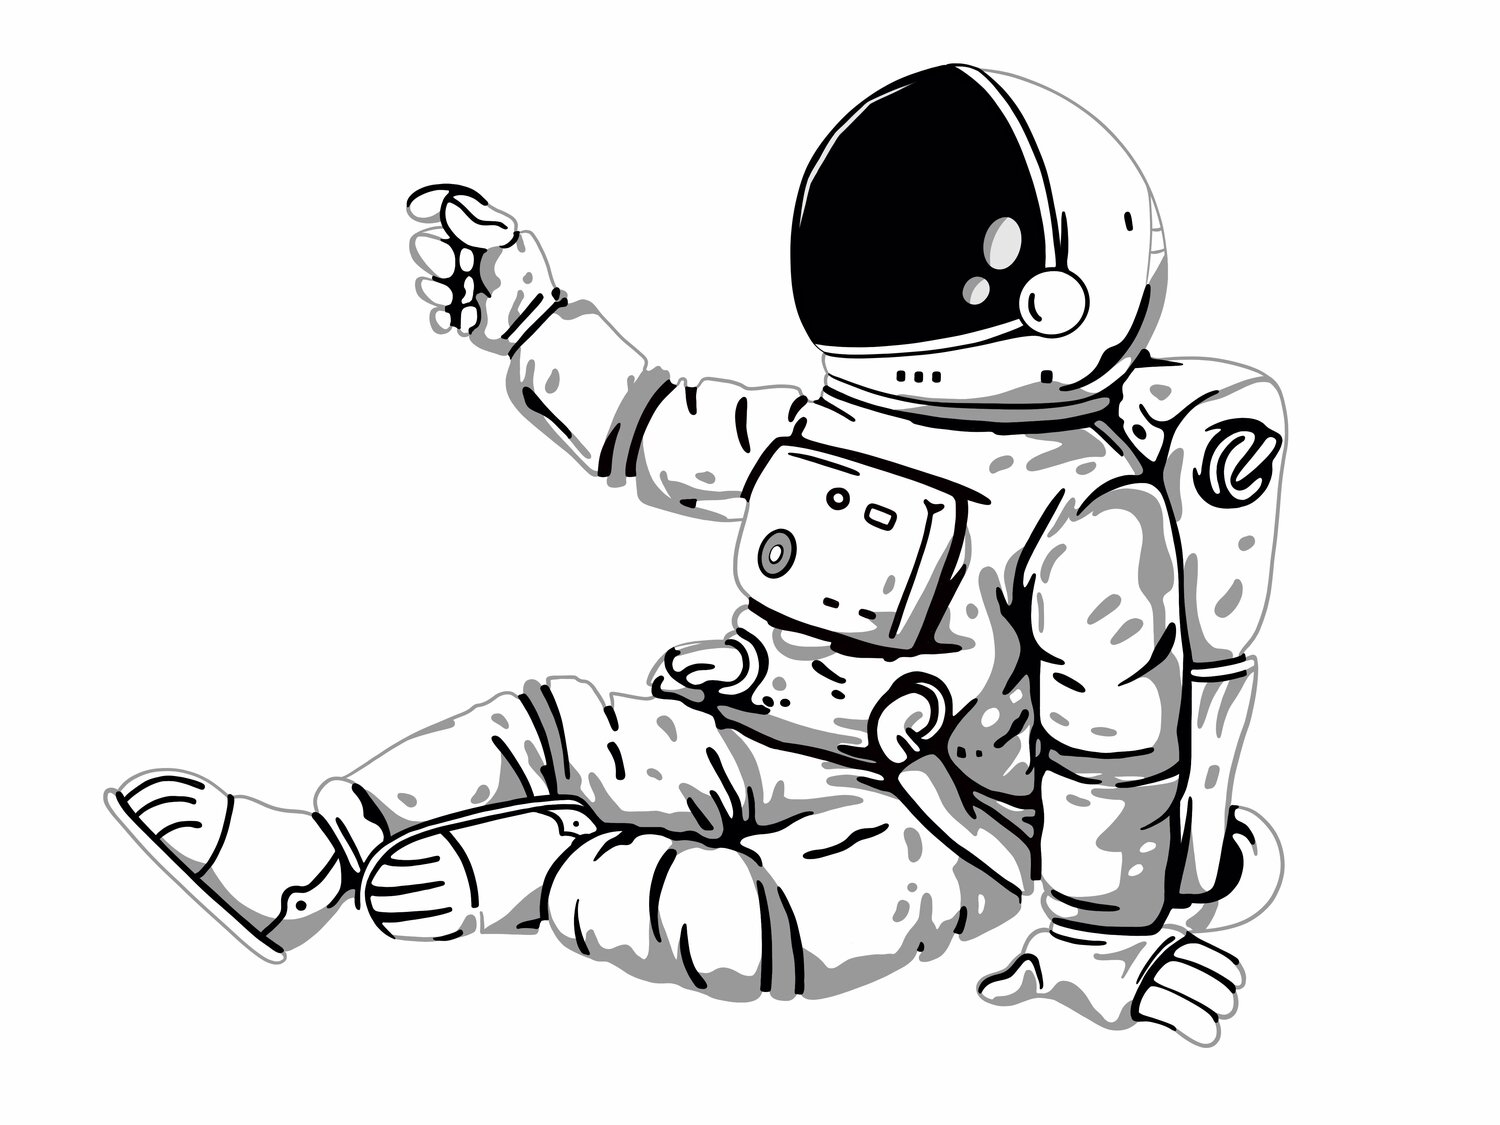 Космонавт рисунок простой. Космонавт рисунок для детей. Космонавт рисунок карандашом. Космонавт раскраска для детей. Космонавт рисунок легкий для детей.